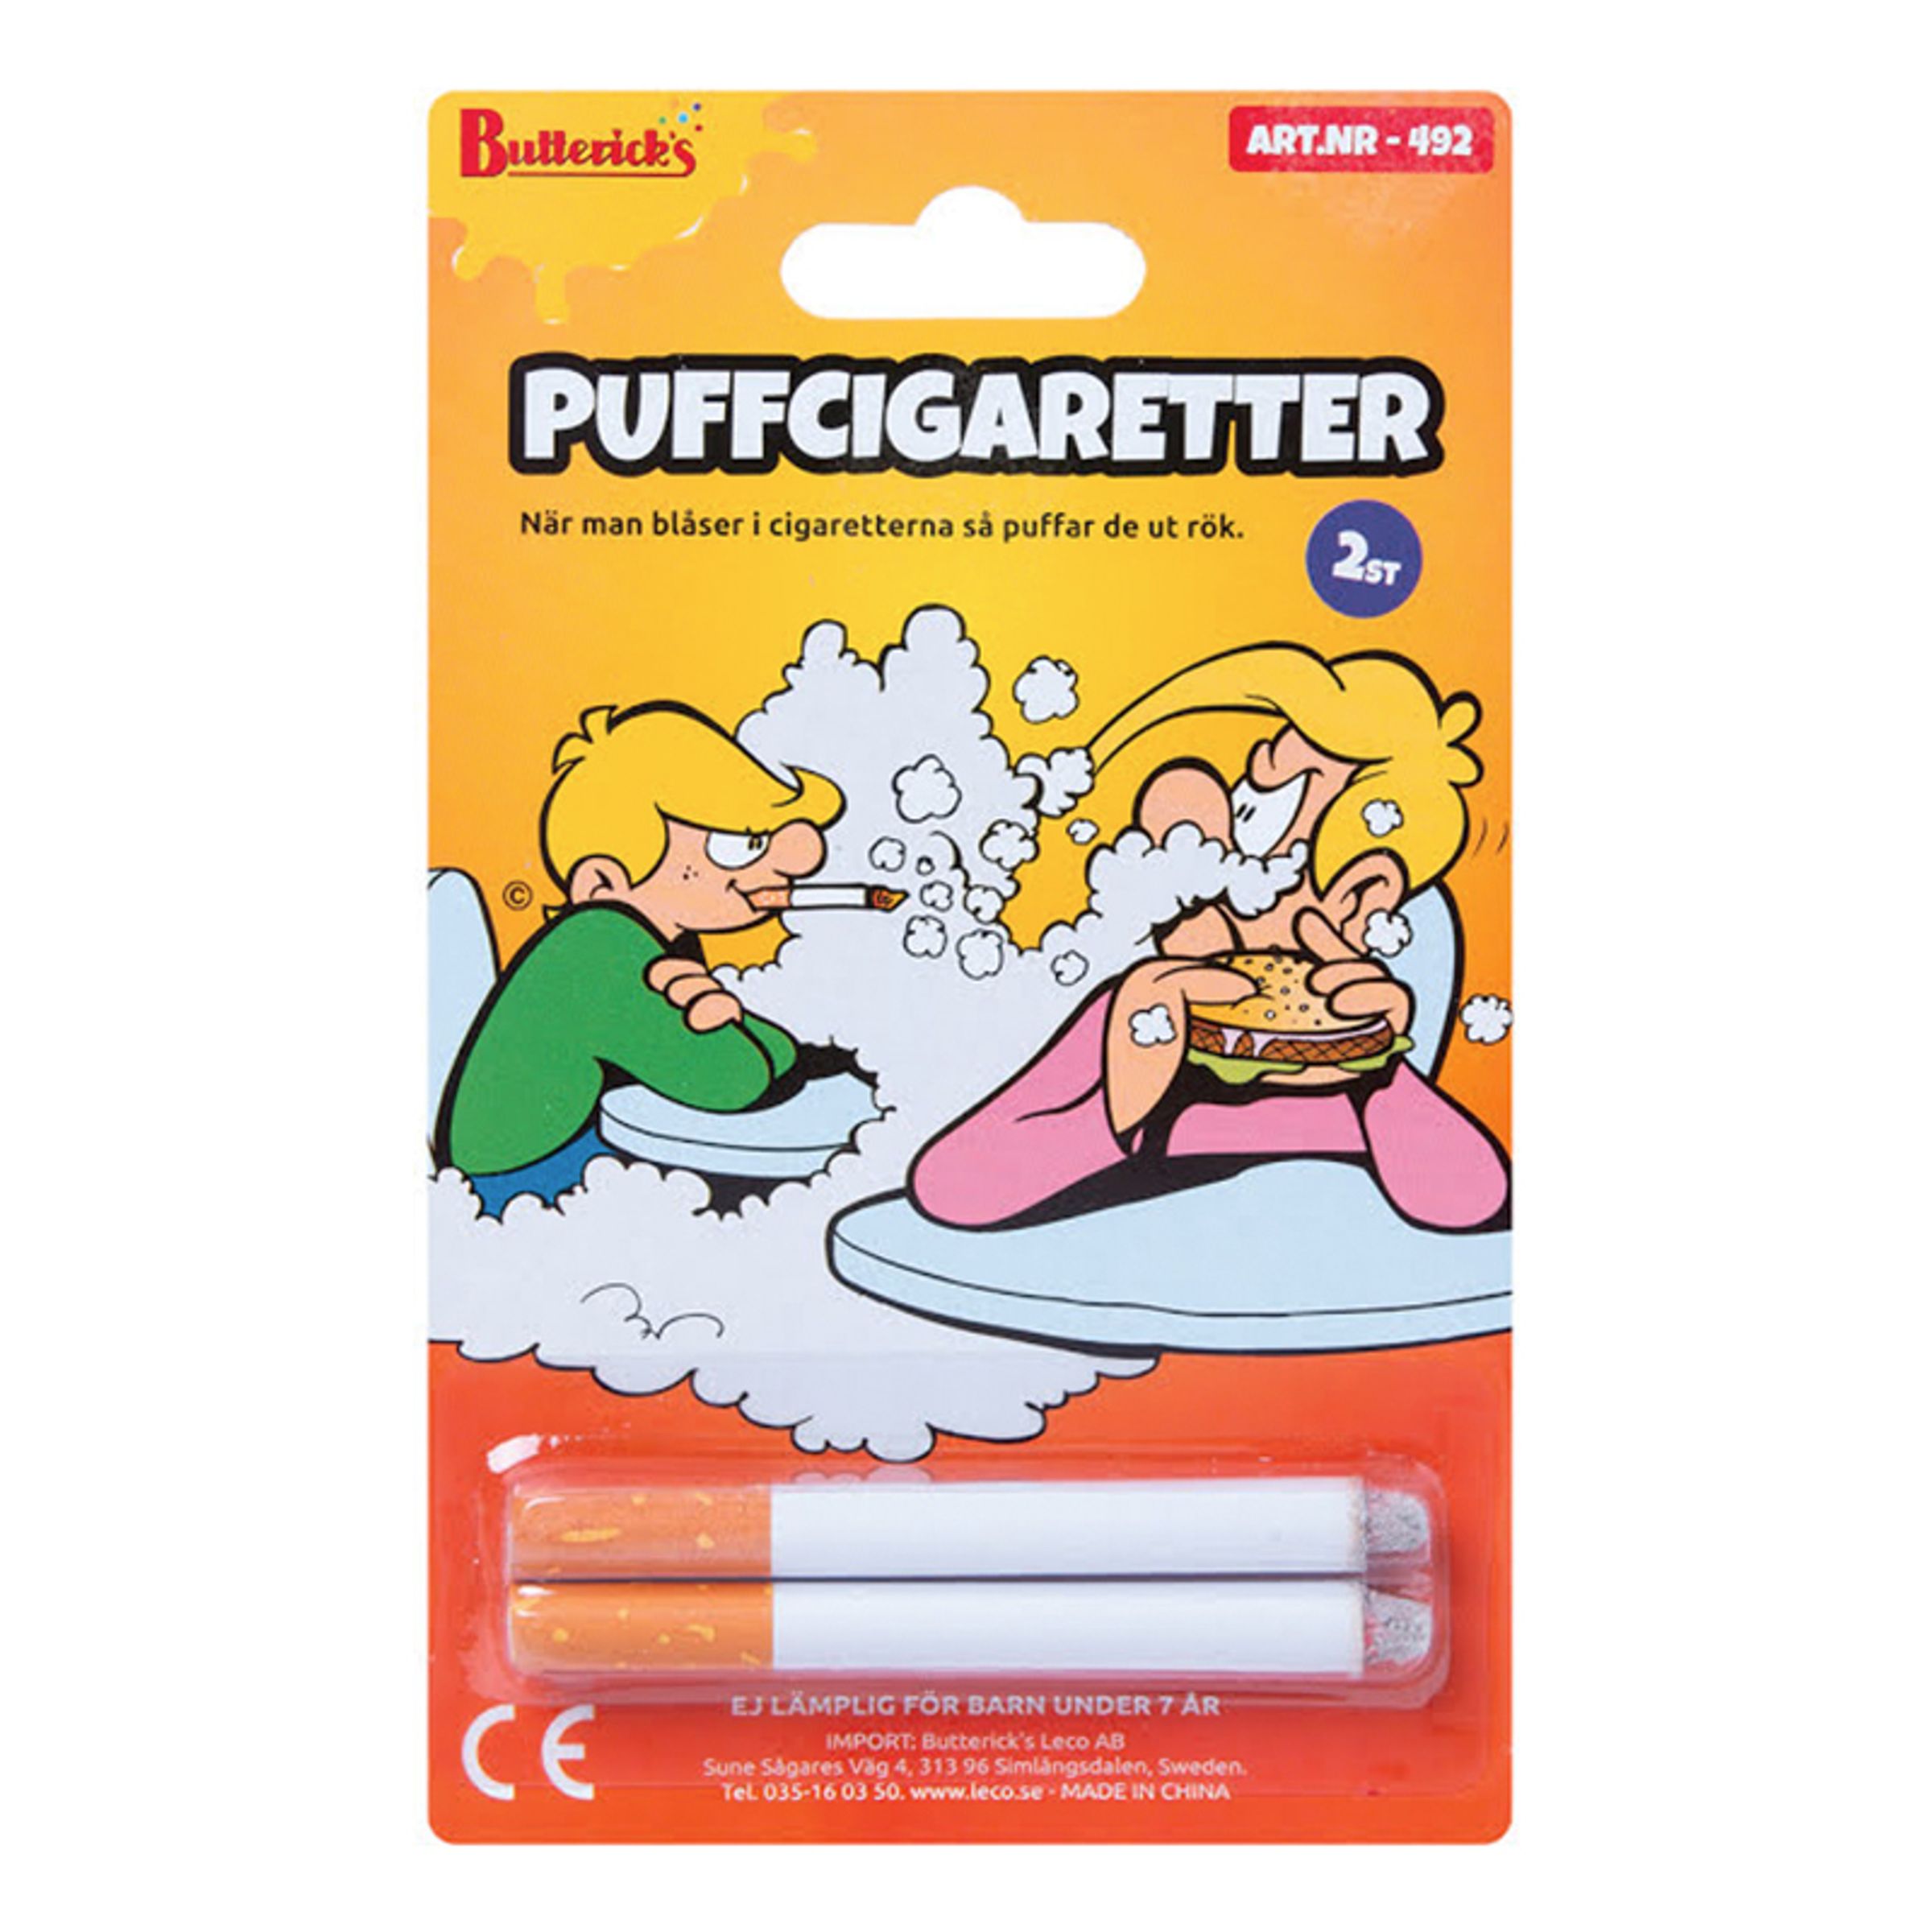 Läs mer om Puffcigaretter Skämtartikel